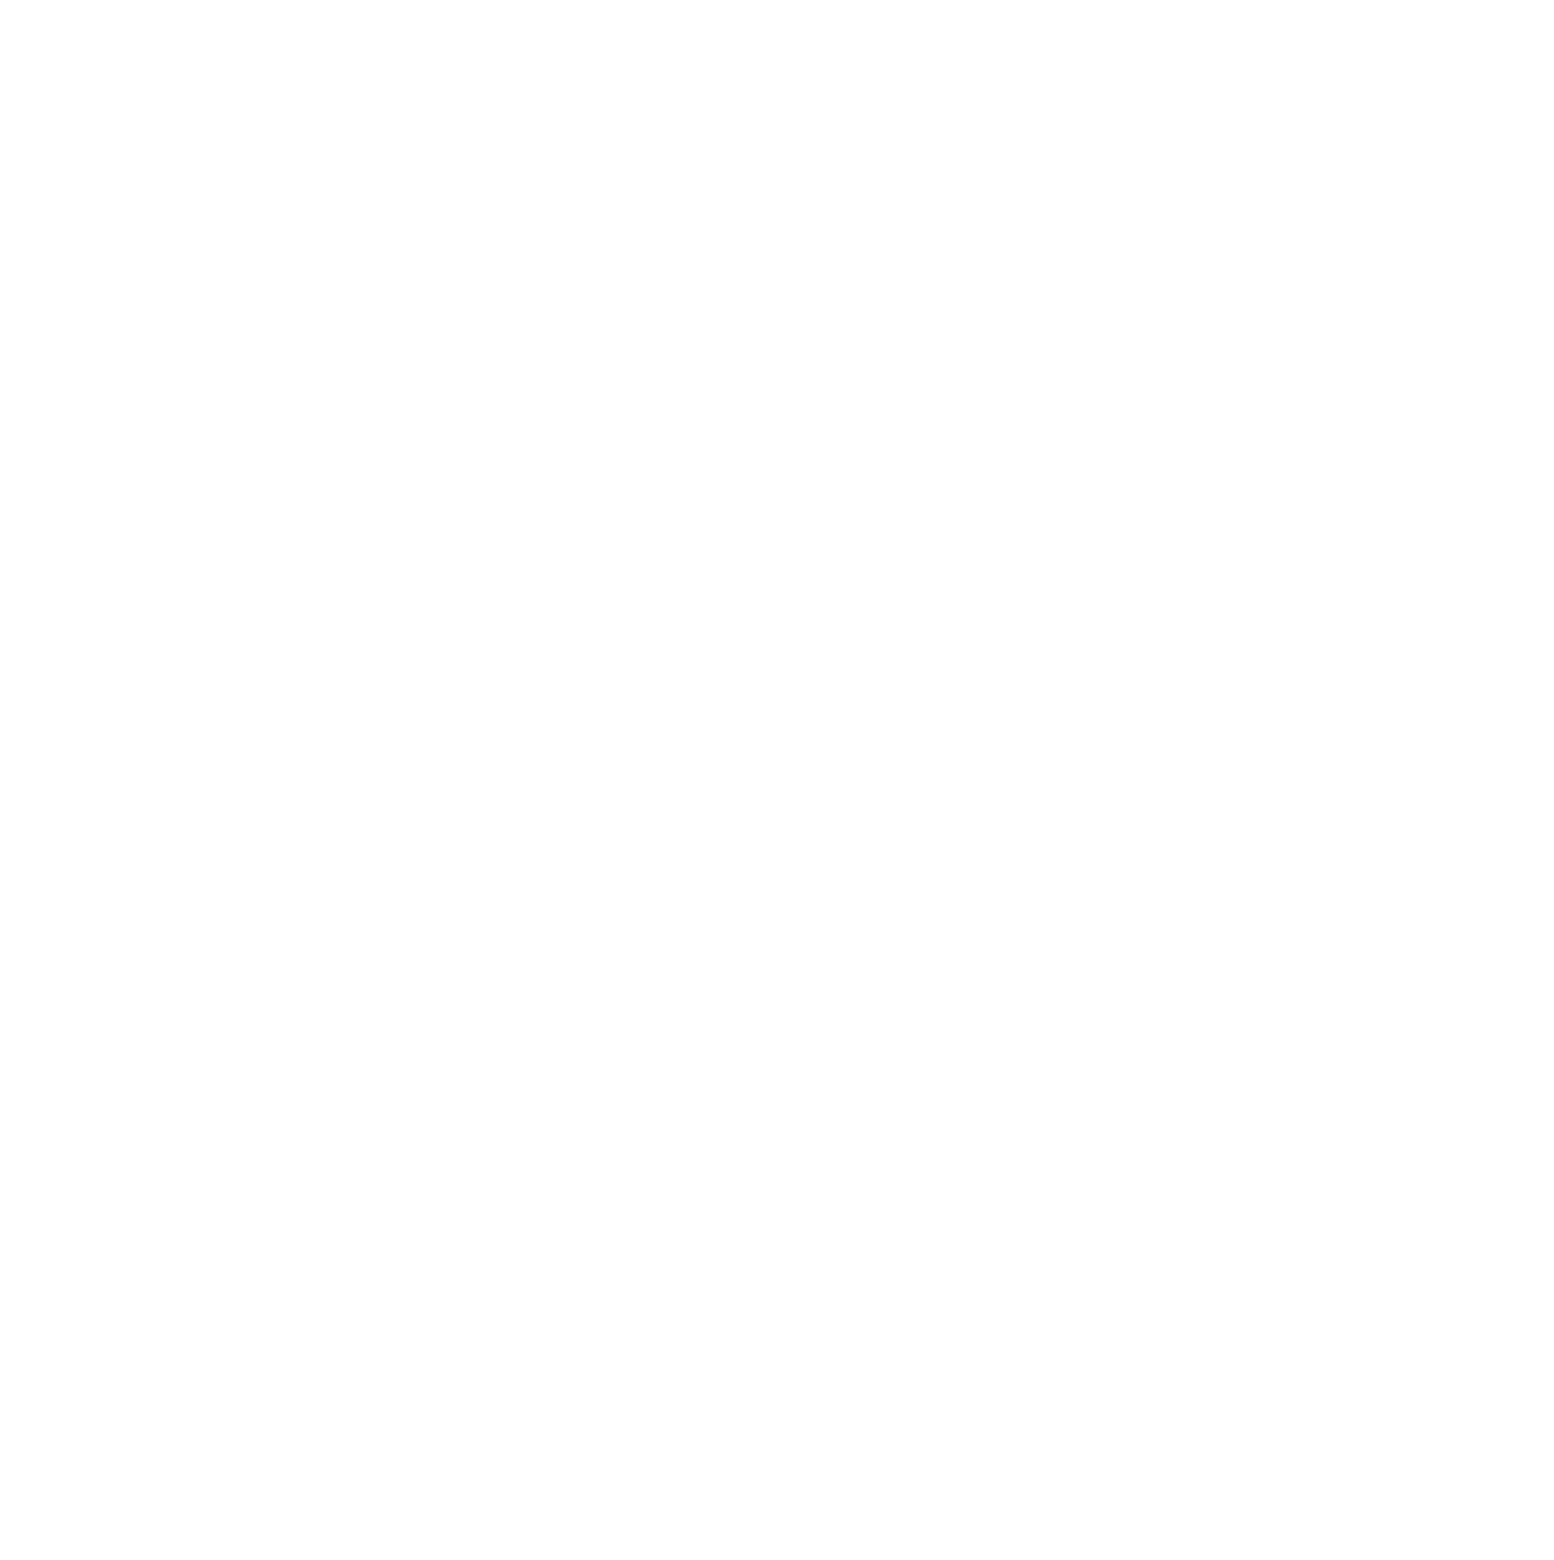 Dentistry Awards 2022 Finalist